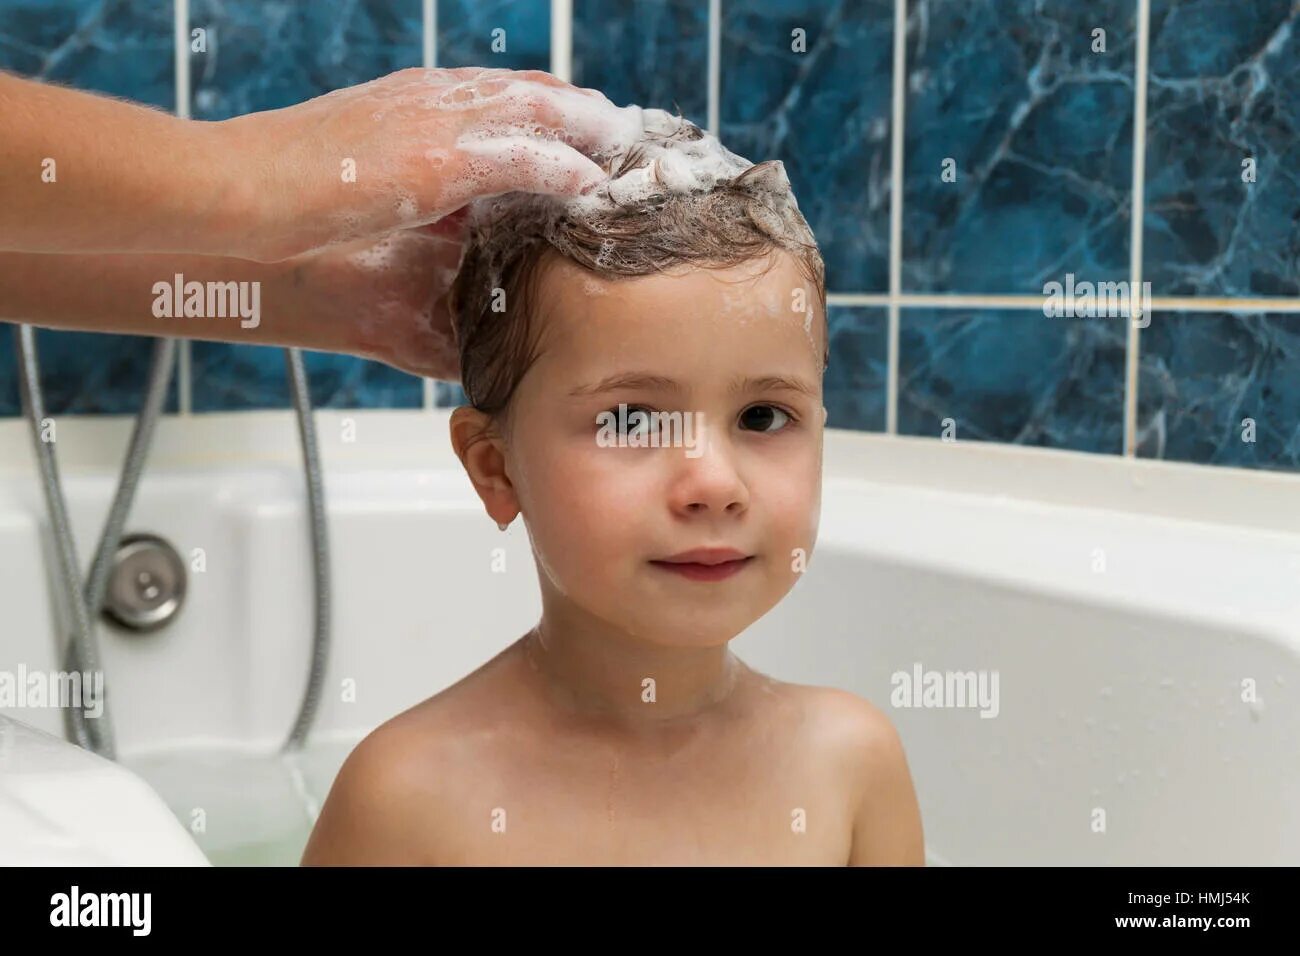 Девочки в ванной мытье головы. Мальчик моется с девочкой. Ребенок моет волосы. Мальчик моет голову.